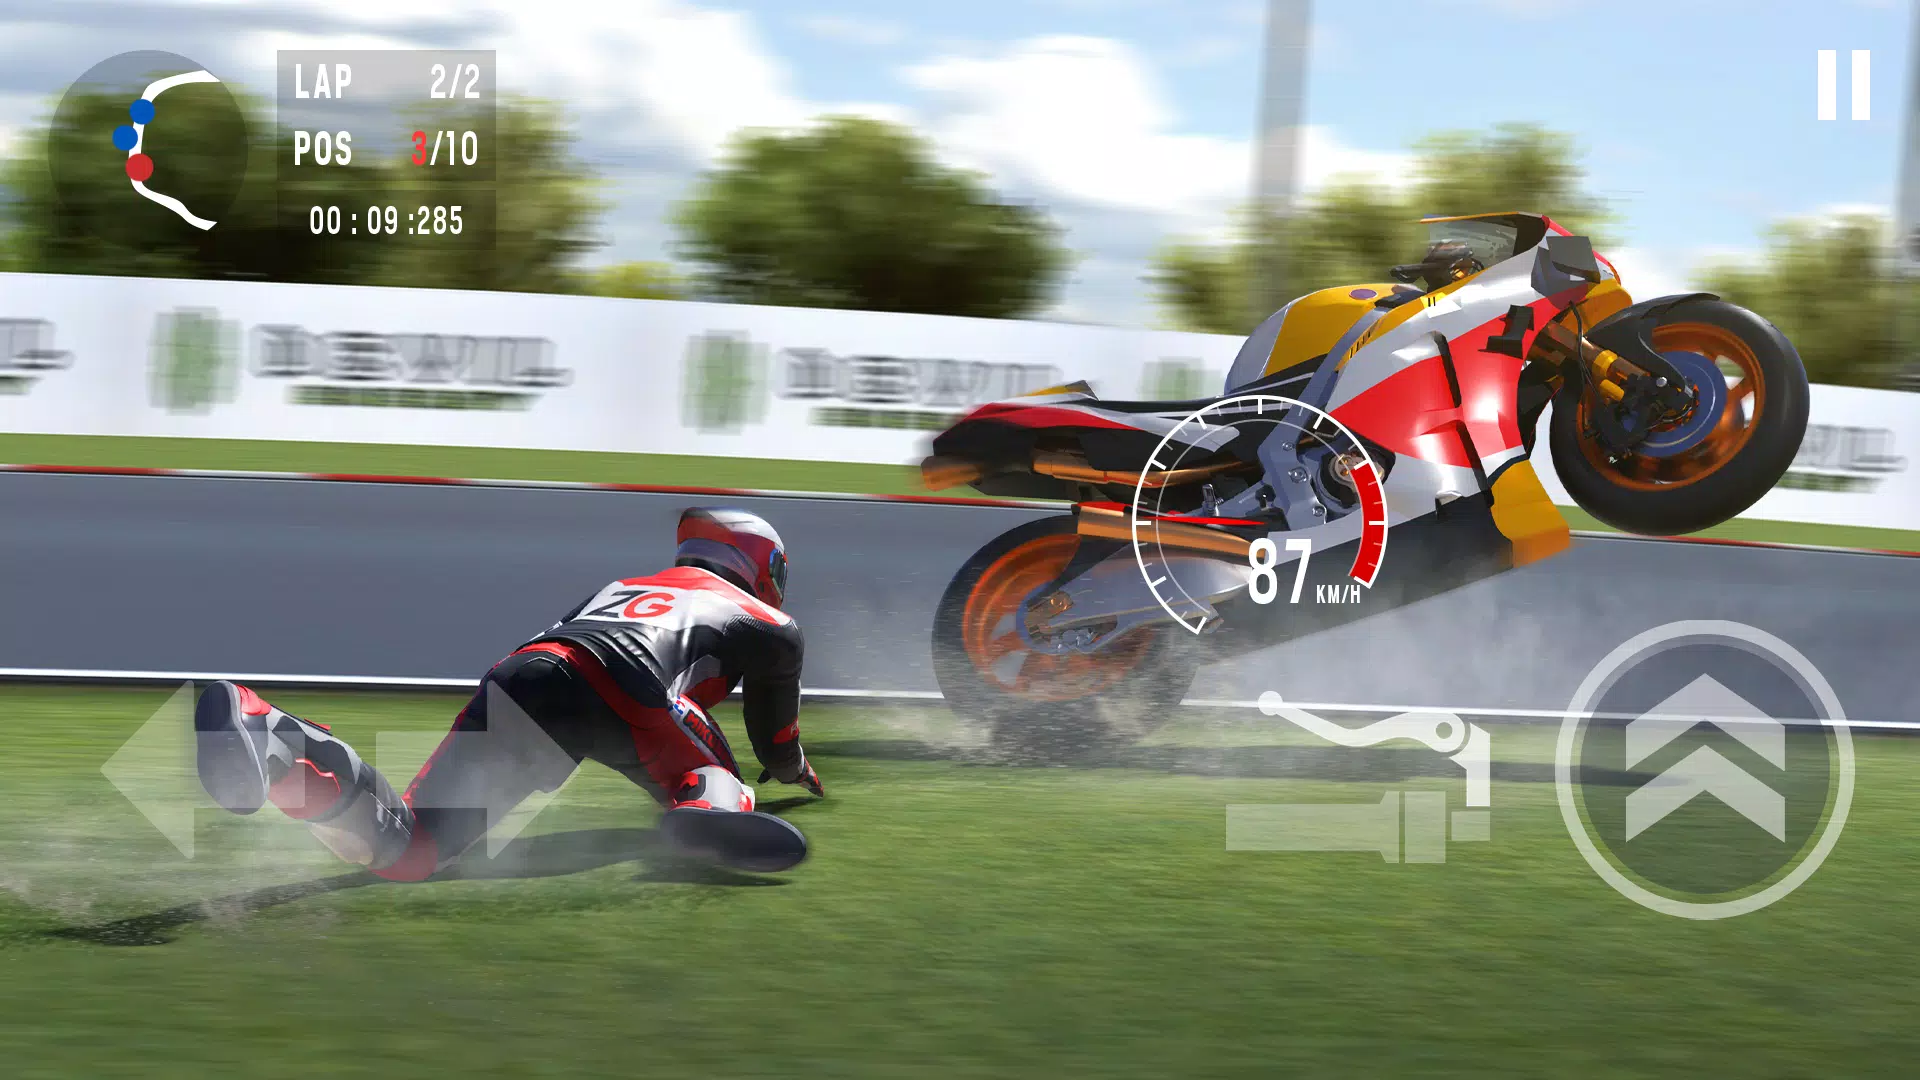 Jogo de Corrida de Moto Real Bike Racing Android Gameplay 